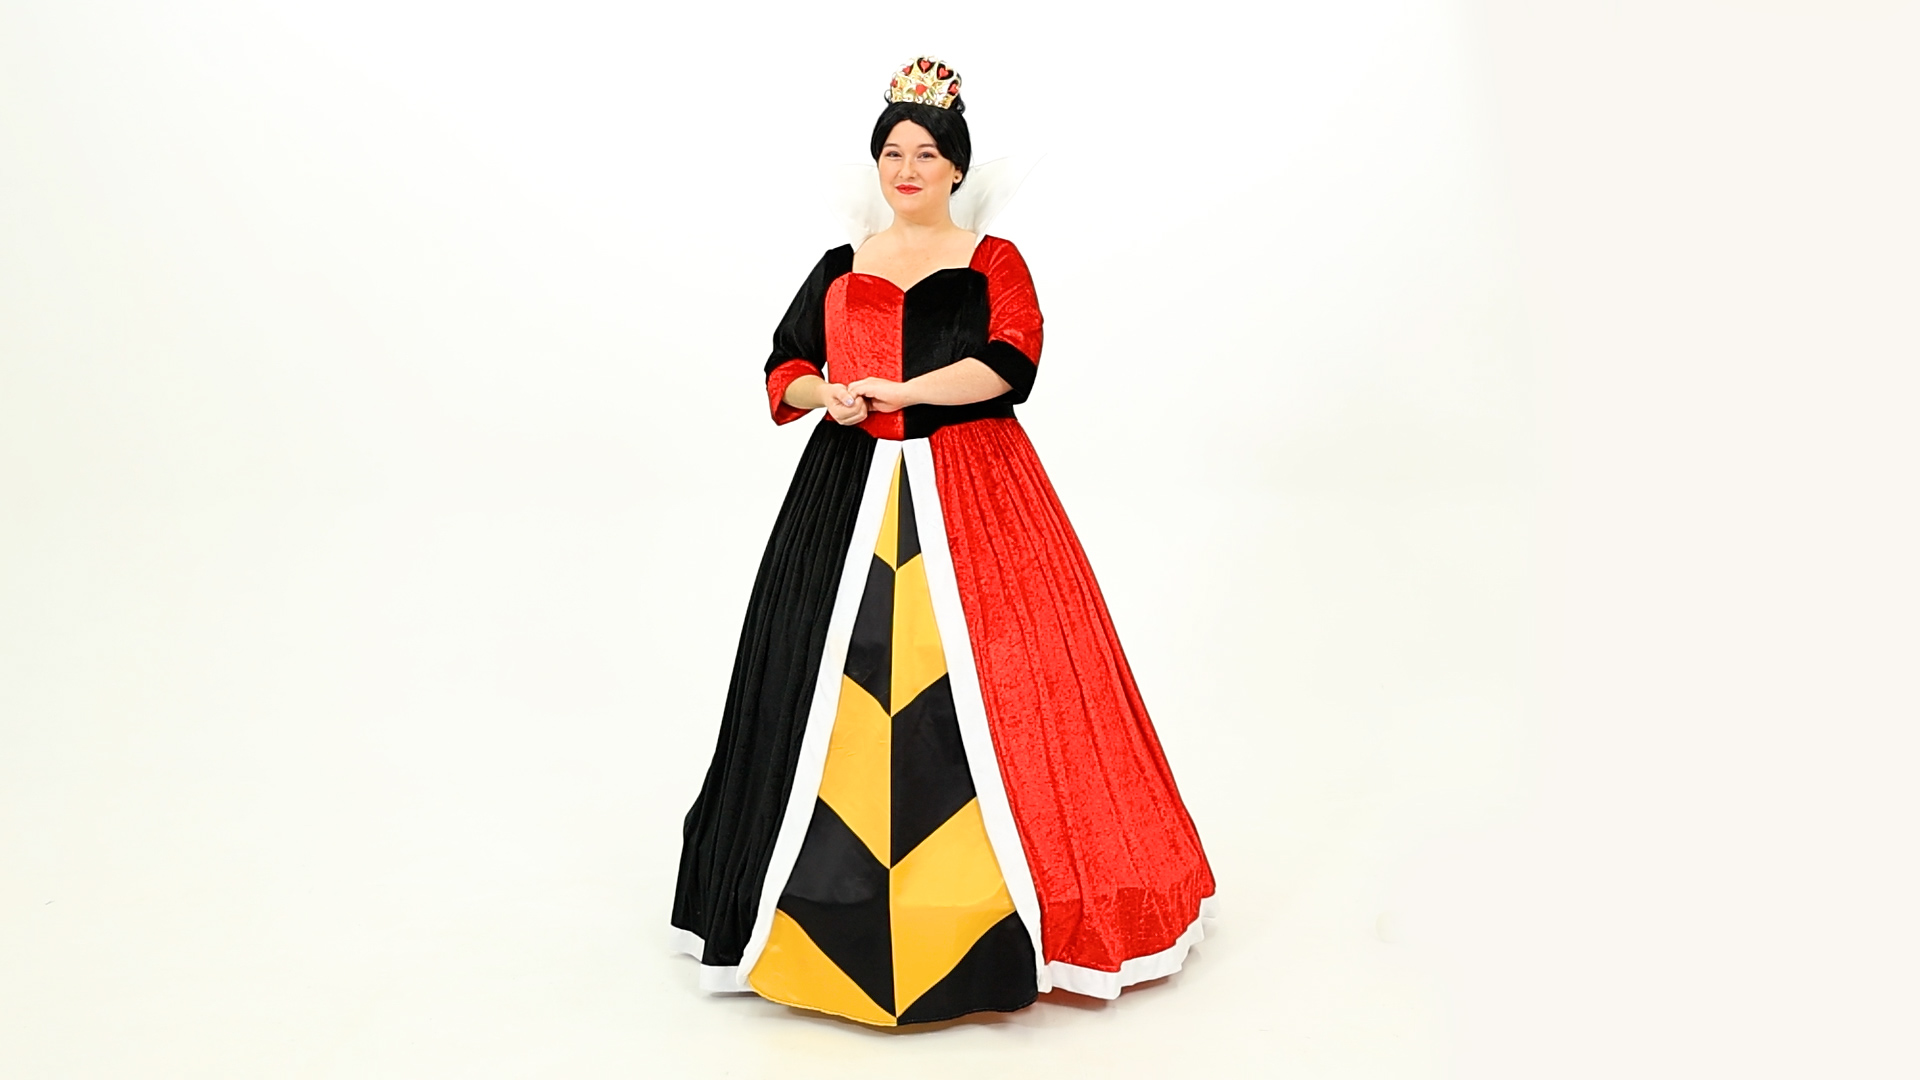 FUN4846PL Women's Plus Size Deluxe Disney Queen of Hearts Costume Dress